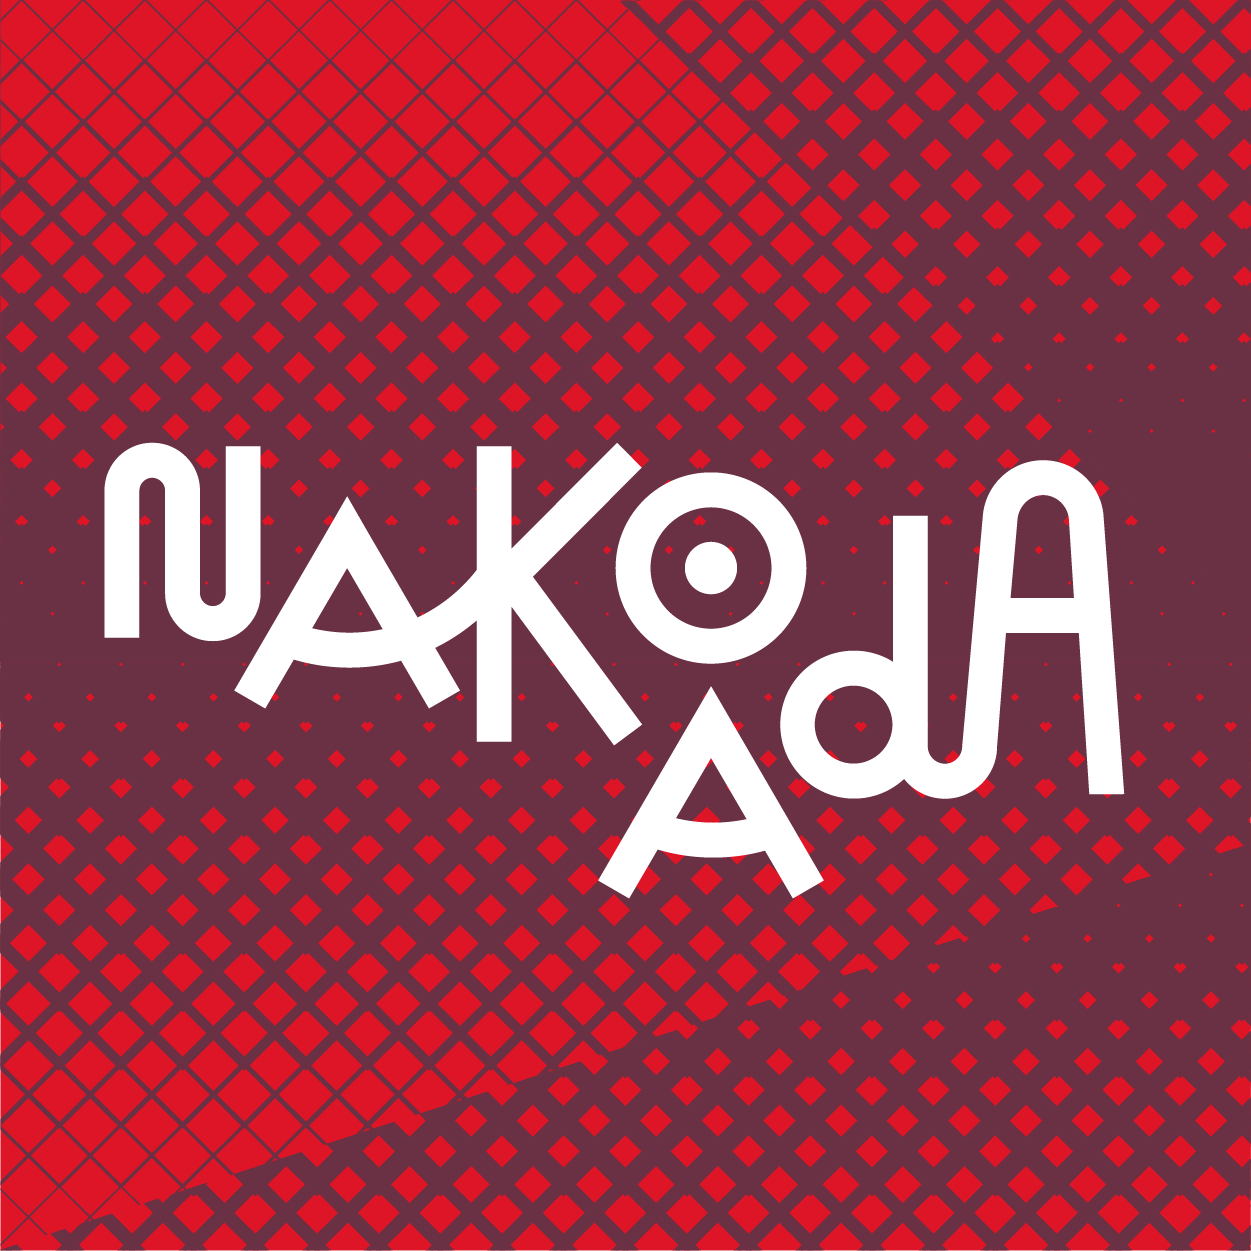 Fundo vermelho com grafismos geométricos remetendo a artesanato indígena, no primeiro plano se lê: Nakoada – estratégias para a arte moderna